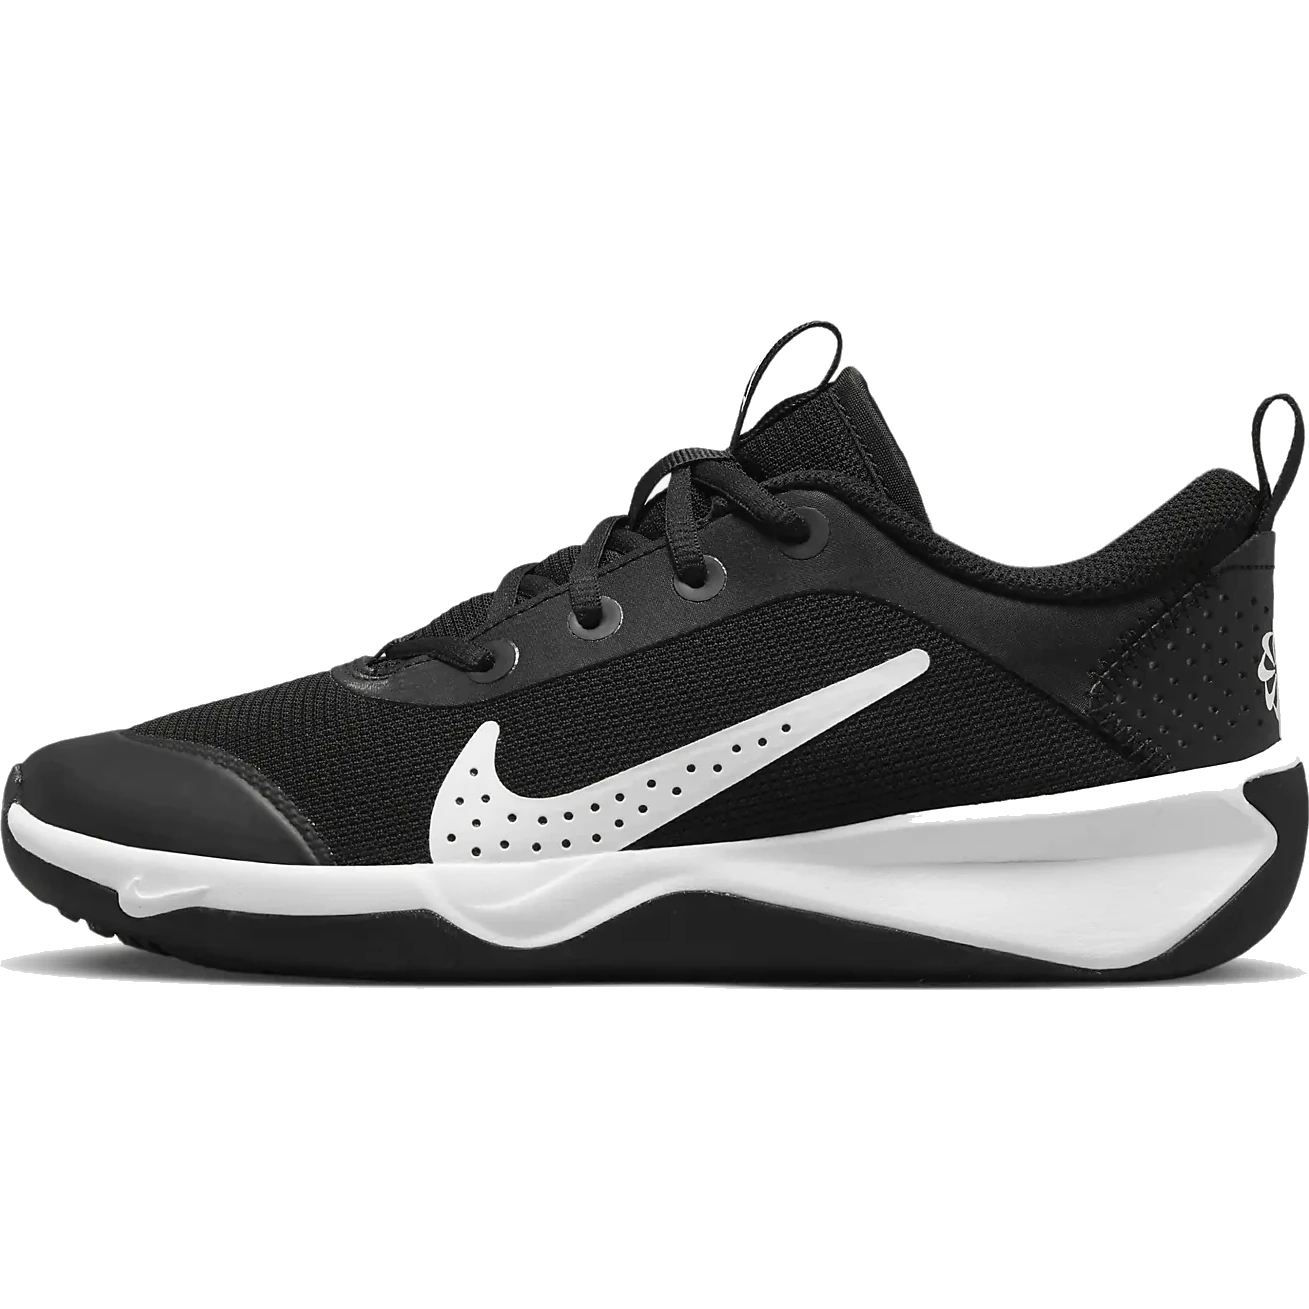 Produktbild von Nike Omni Multi-Court Hallenschuh für ältere Kinder - schwarz/weiß DM9027-002